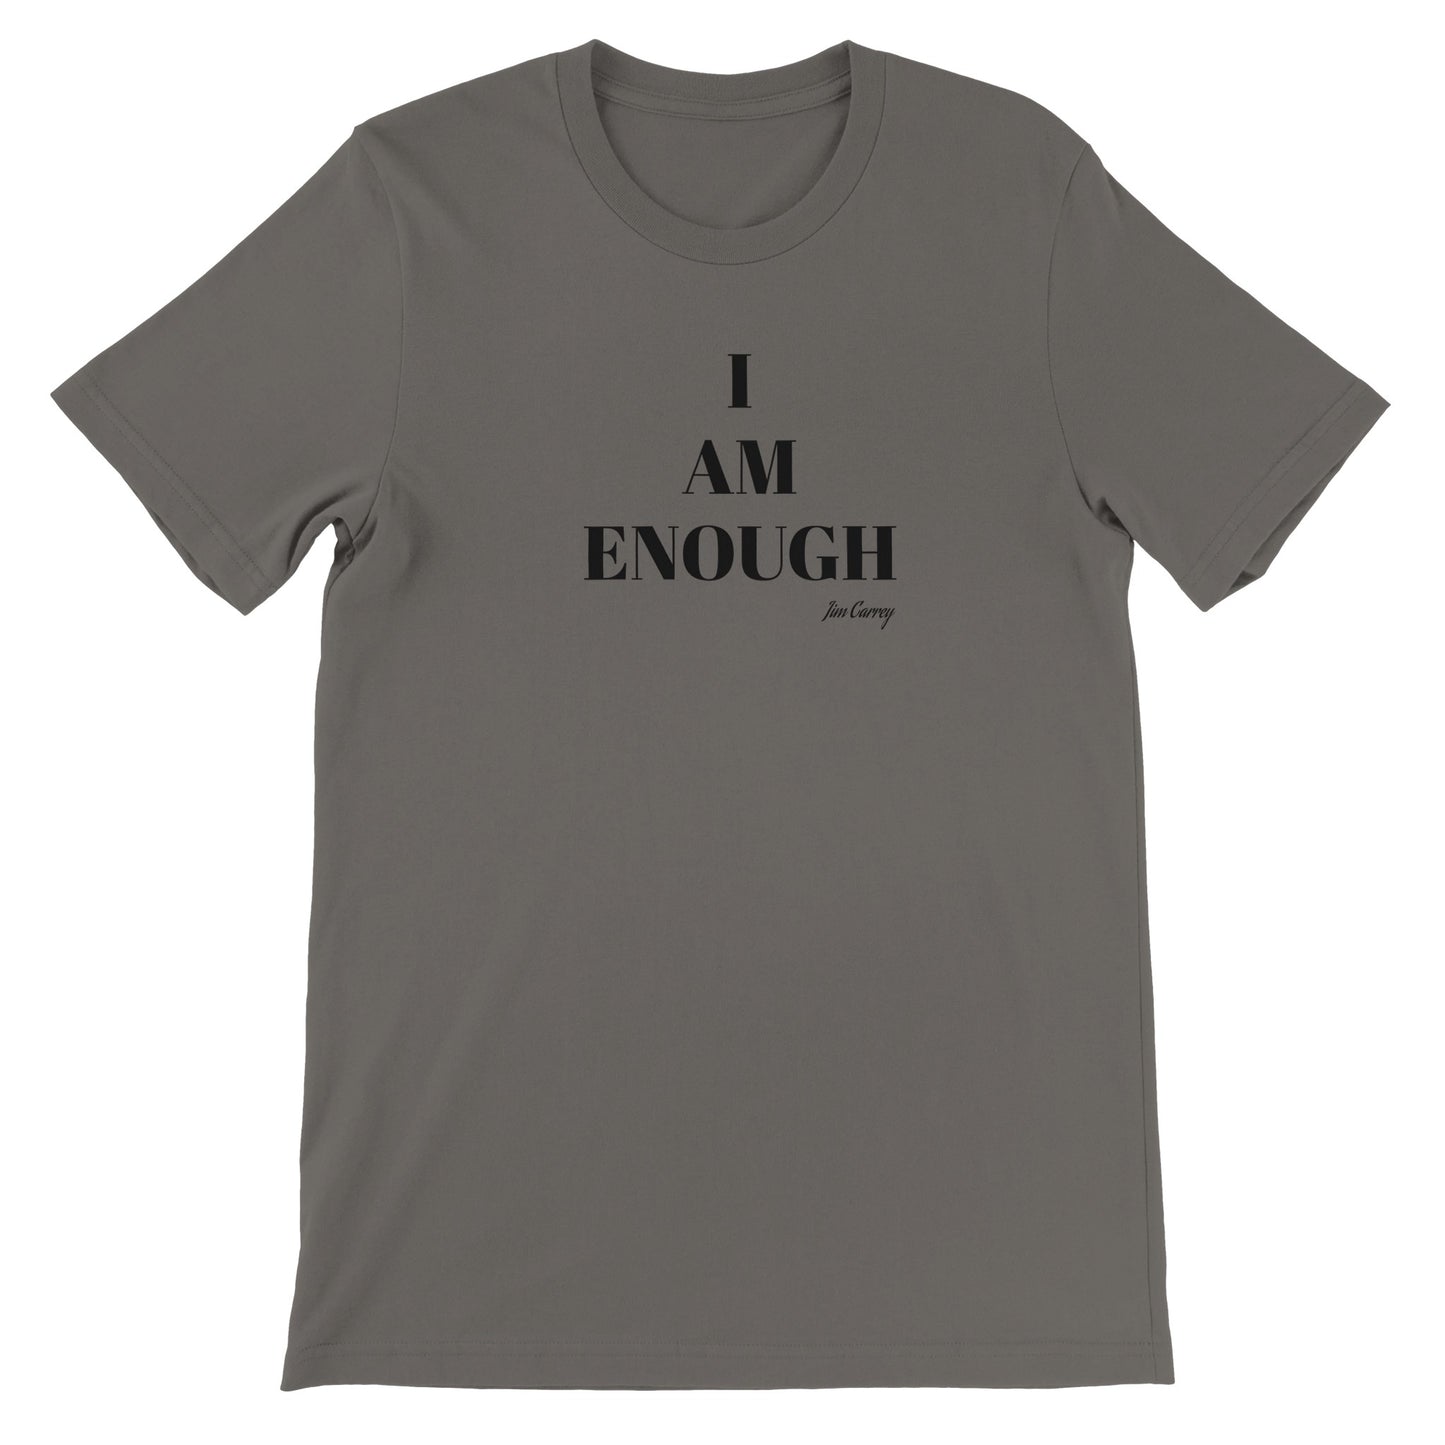 Citat T-shirt - Jim Carrey I am enough - Premium Unisex Crewneck T-shirt